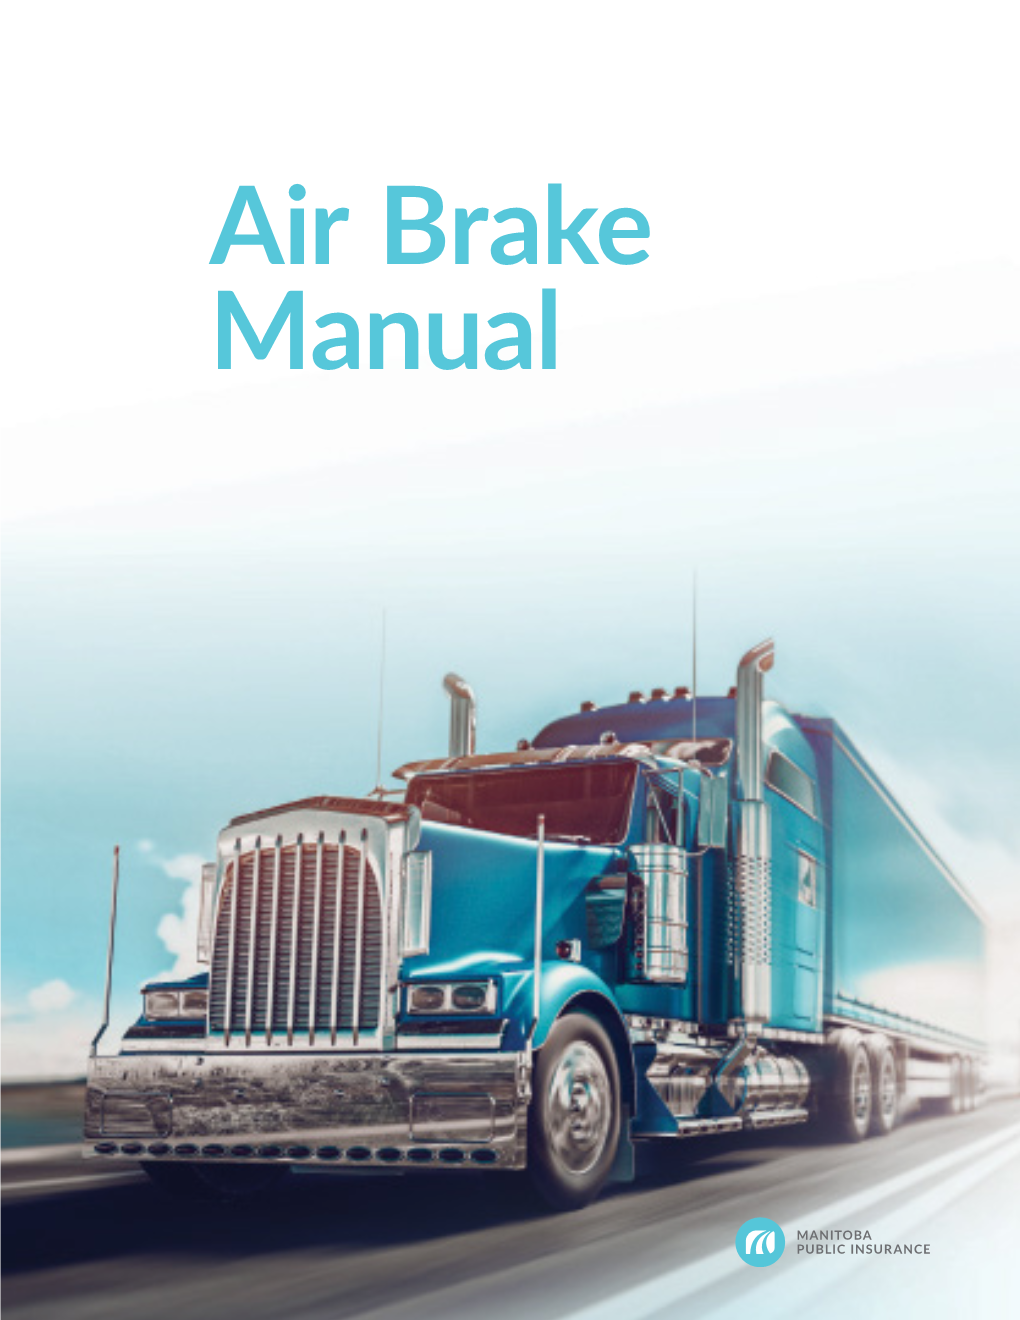 Air Brake Manual